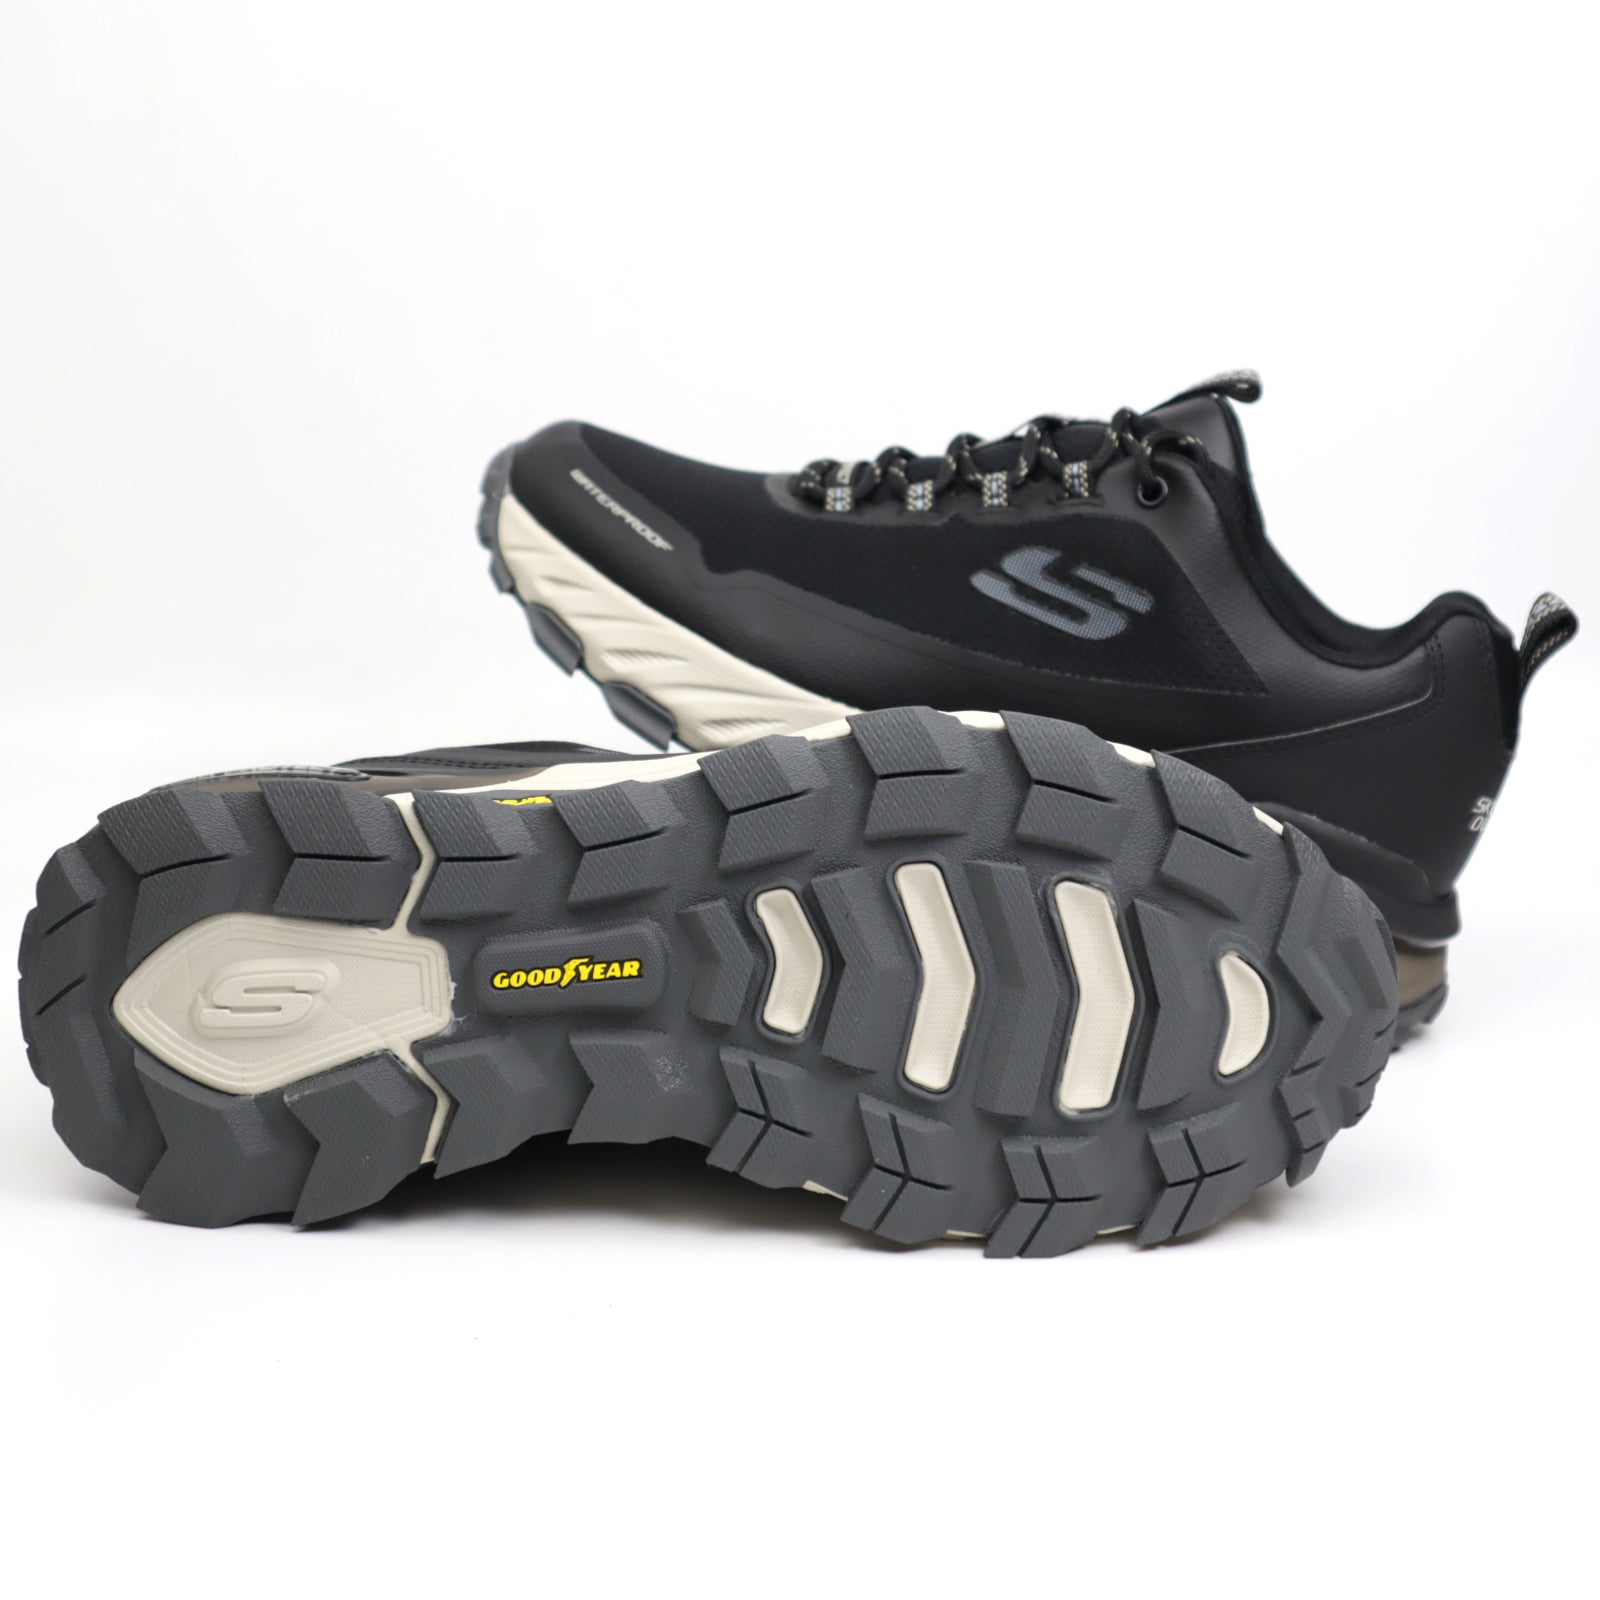 Skechers Pantofi barbati waterproof 237304 Max Protect Fast Track BLACK/GRAY IB2304-BKGY